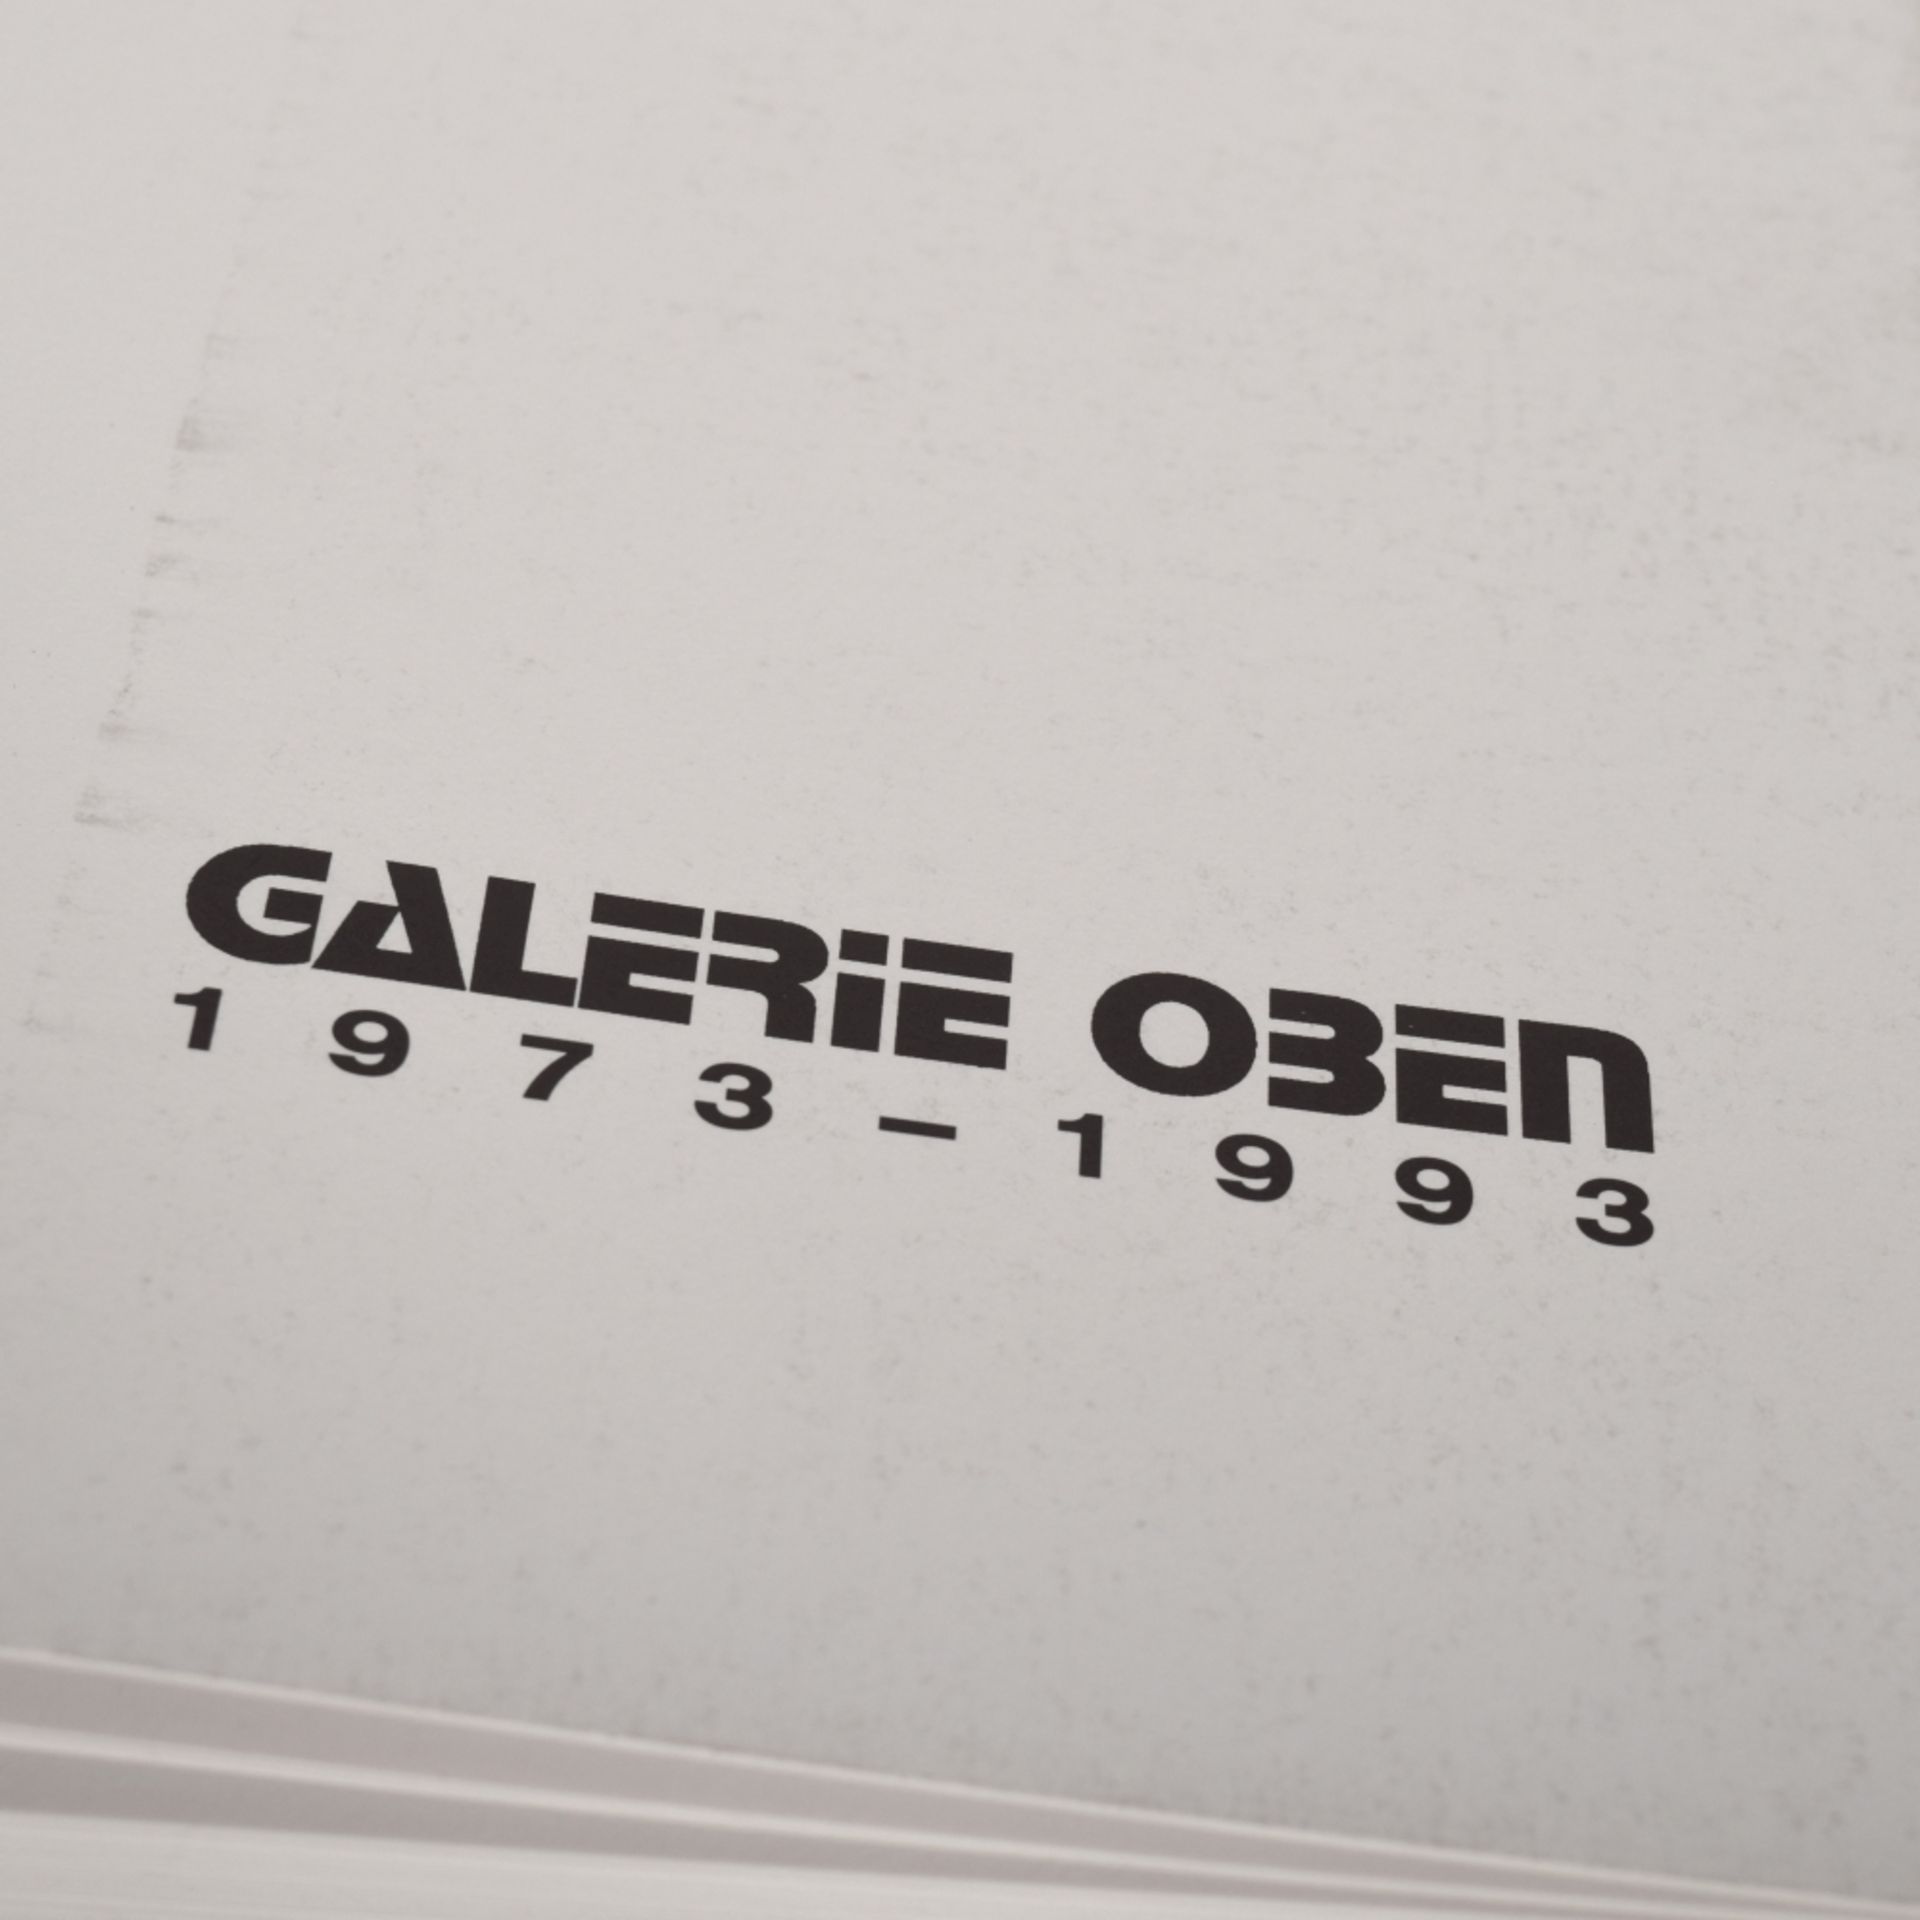 Katalog GALERIE OBEN 1973-1993 - Bild 2 aus 4